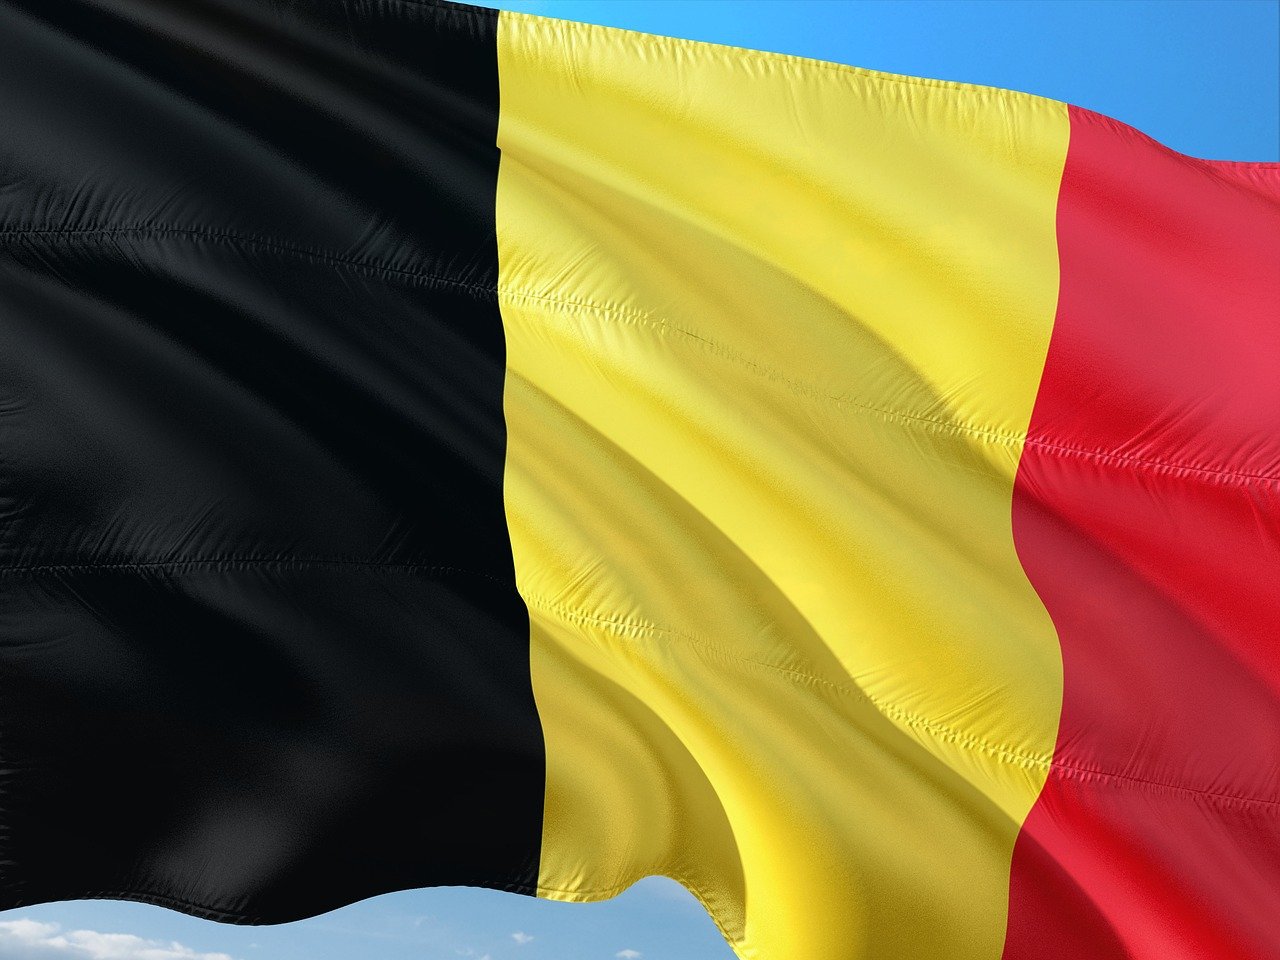 Le MoU avec Catalisti (Flandre), une première historique pour les pôles de compétitivité wallons et belges et leurs membres